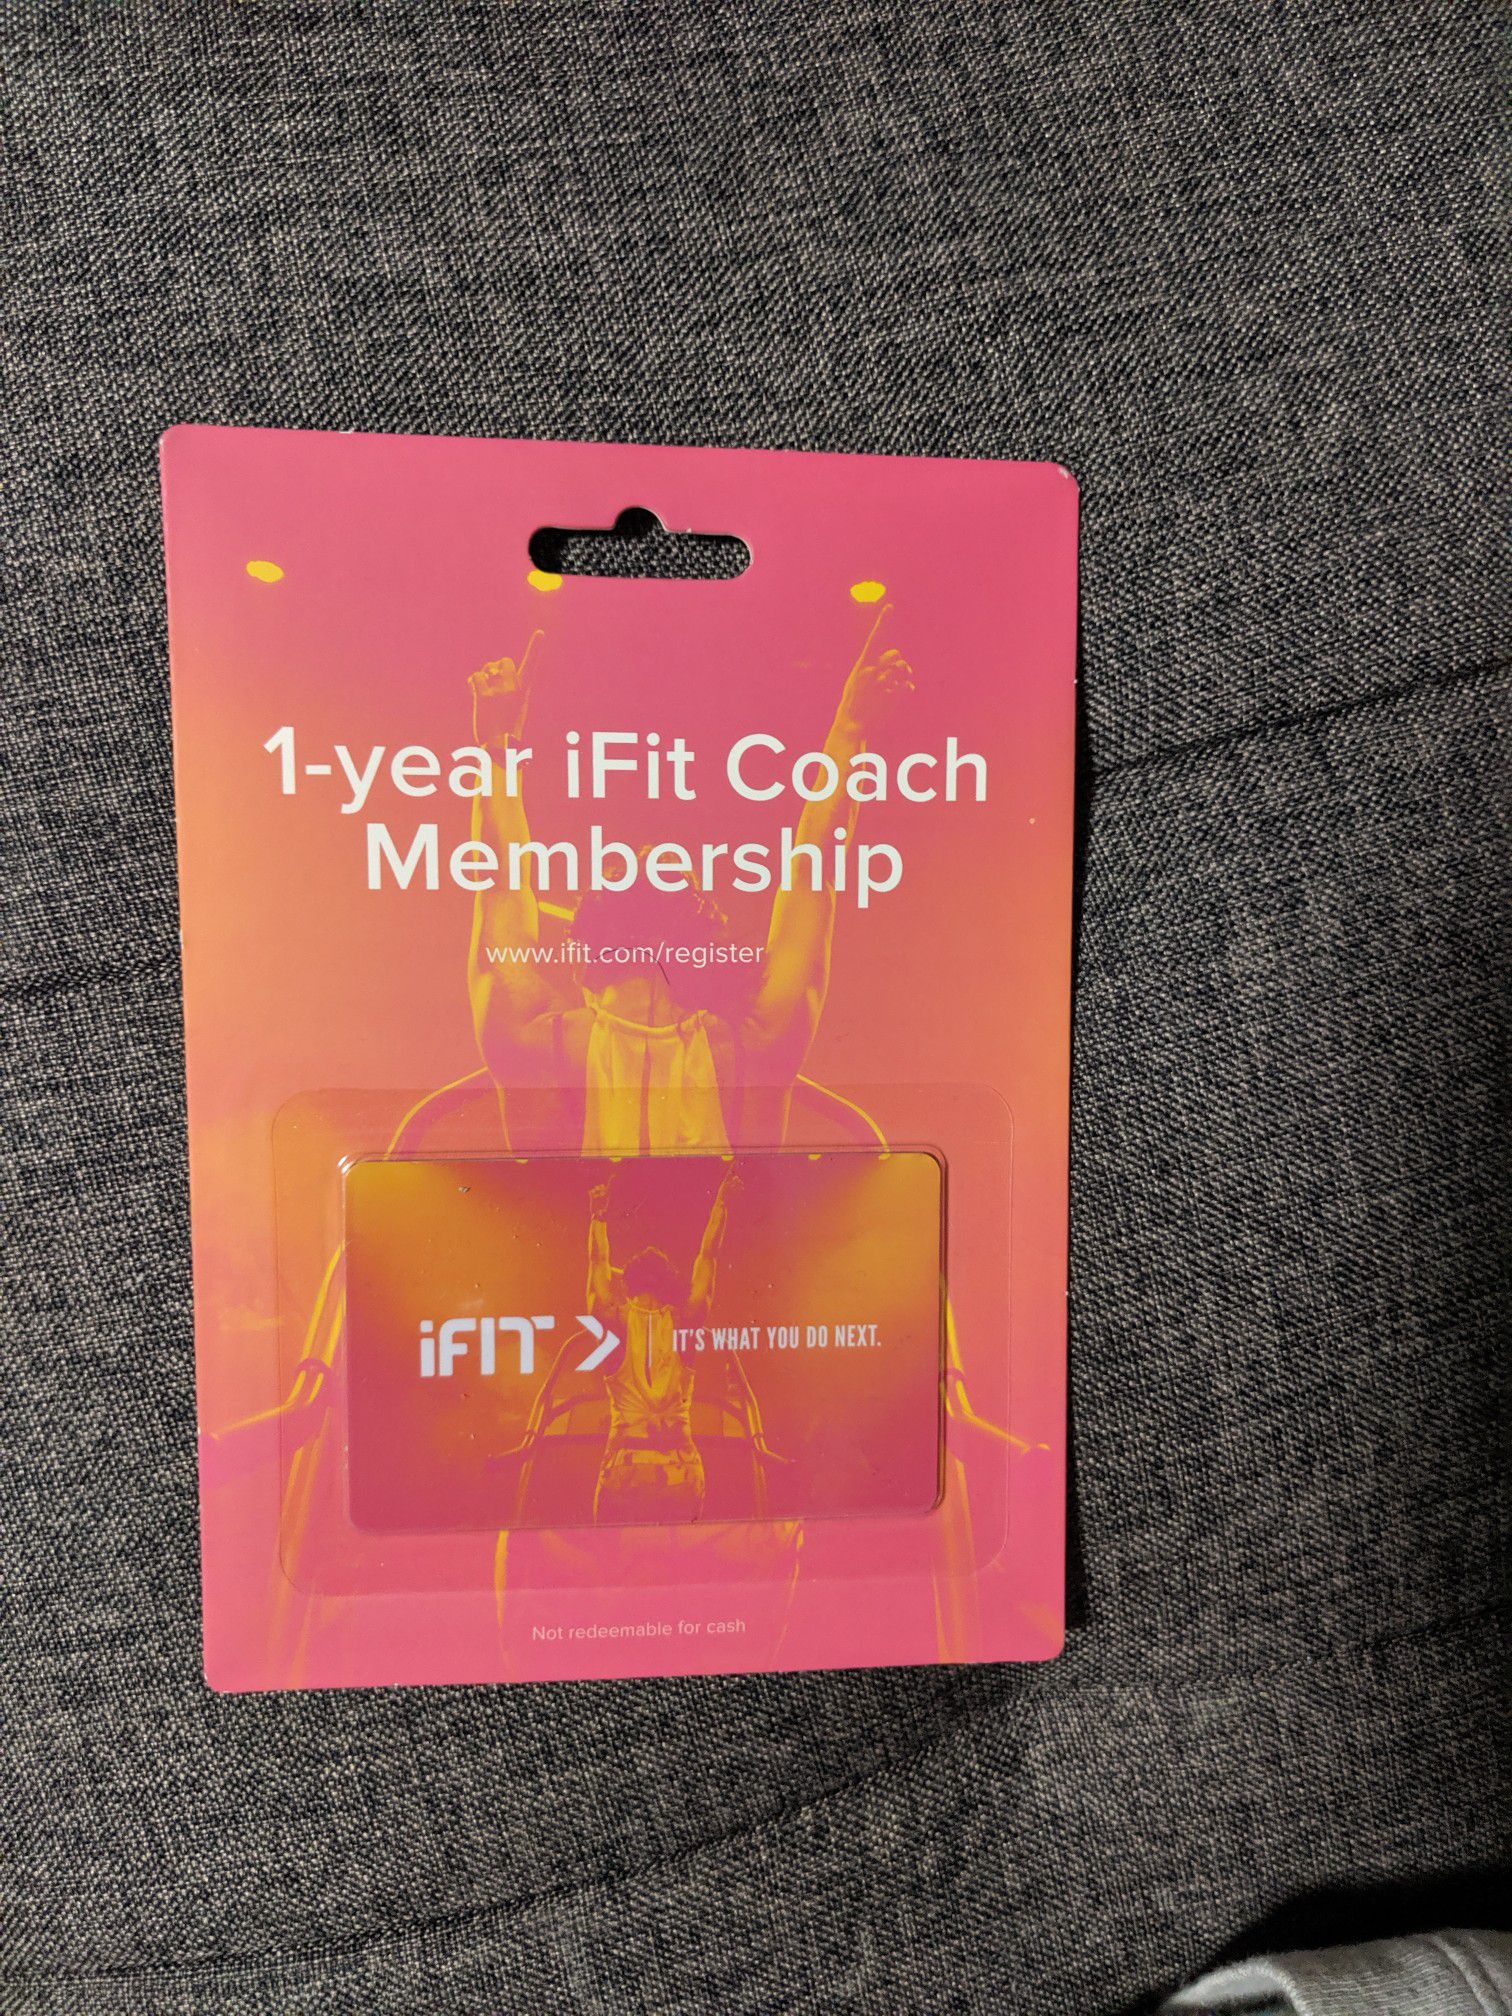 Ifit coach membership -1 year